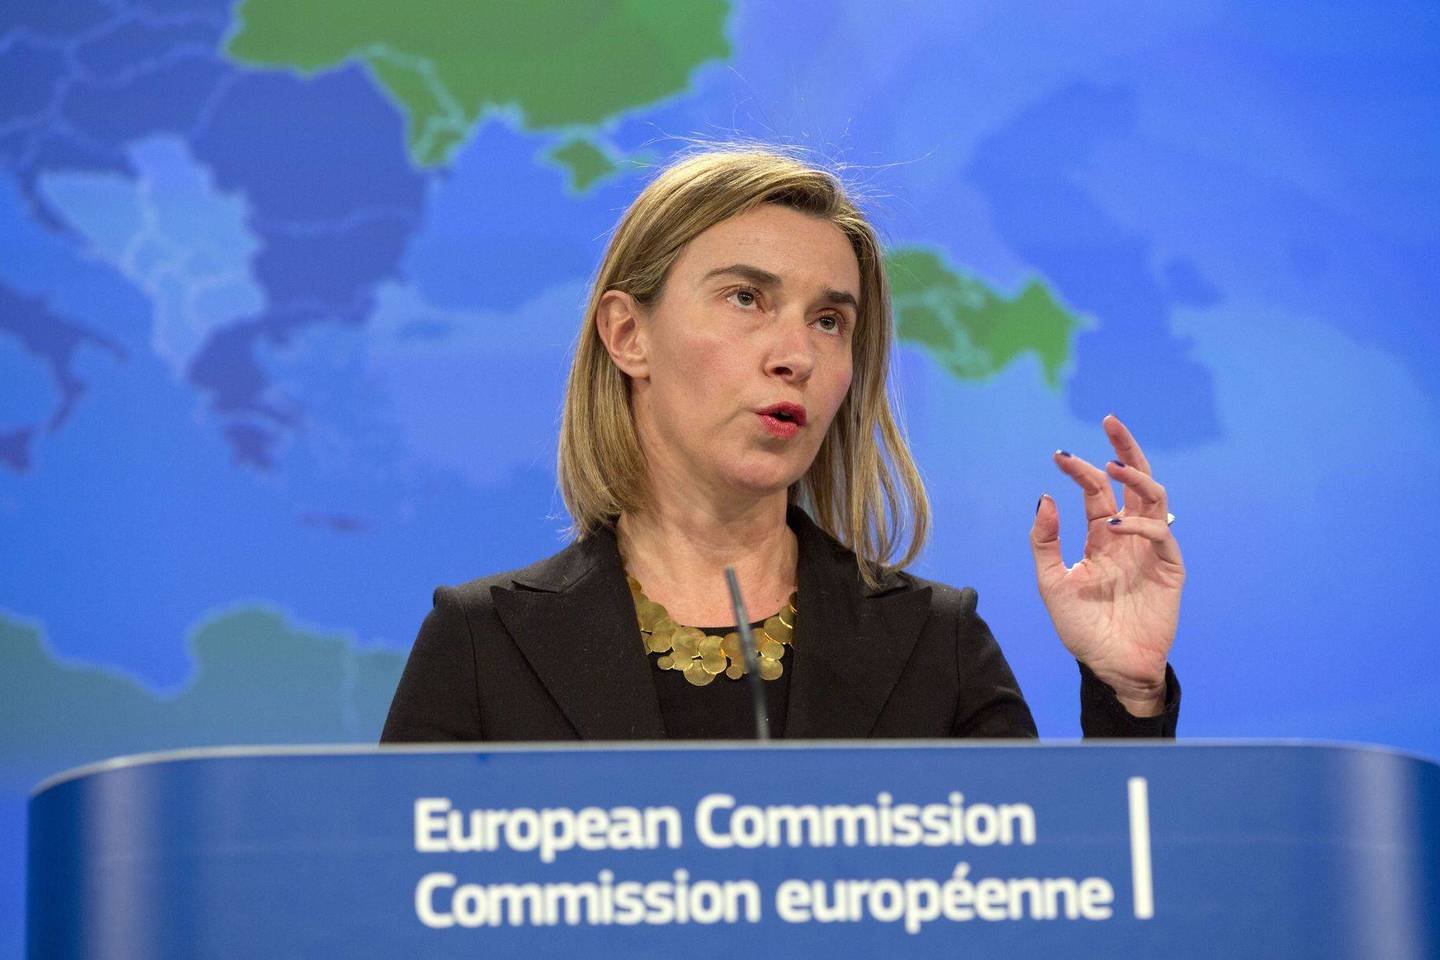 ES diplomatijos atstovė F.Mogherini sakė, kad 28 ES valstybės narės turėtų sukurti tokią politiką, kuri atspindėtų skirtingų partnerių vertybes, siekius ir interesus.<br>AP nuotr.